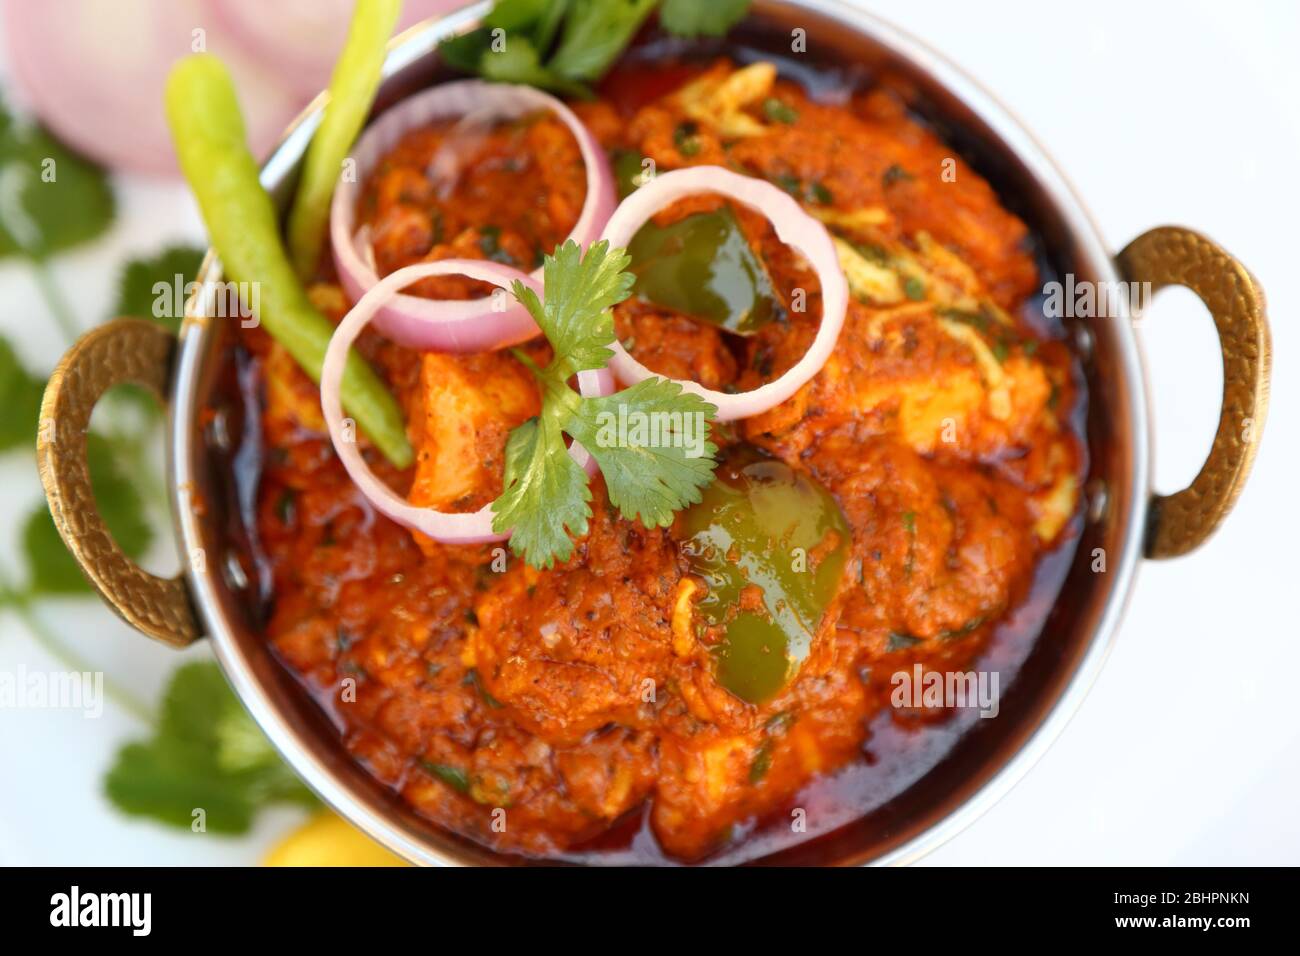 HÜTTENKÄSE IM INDISCHEN STIL VEGETARISCHES CURRY GERICHT. Kadai Paneer – traditionelle indische oder punjabi-Küche. Garniert mit Zwiebel- und Chilischeiben. Stockfoto